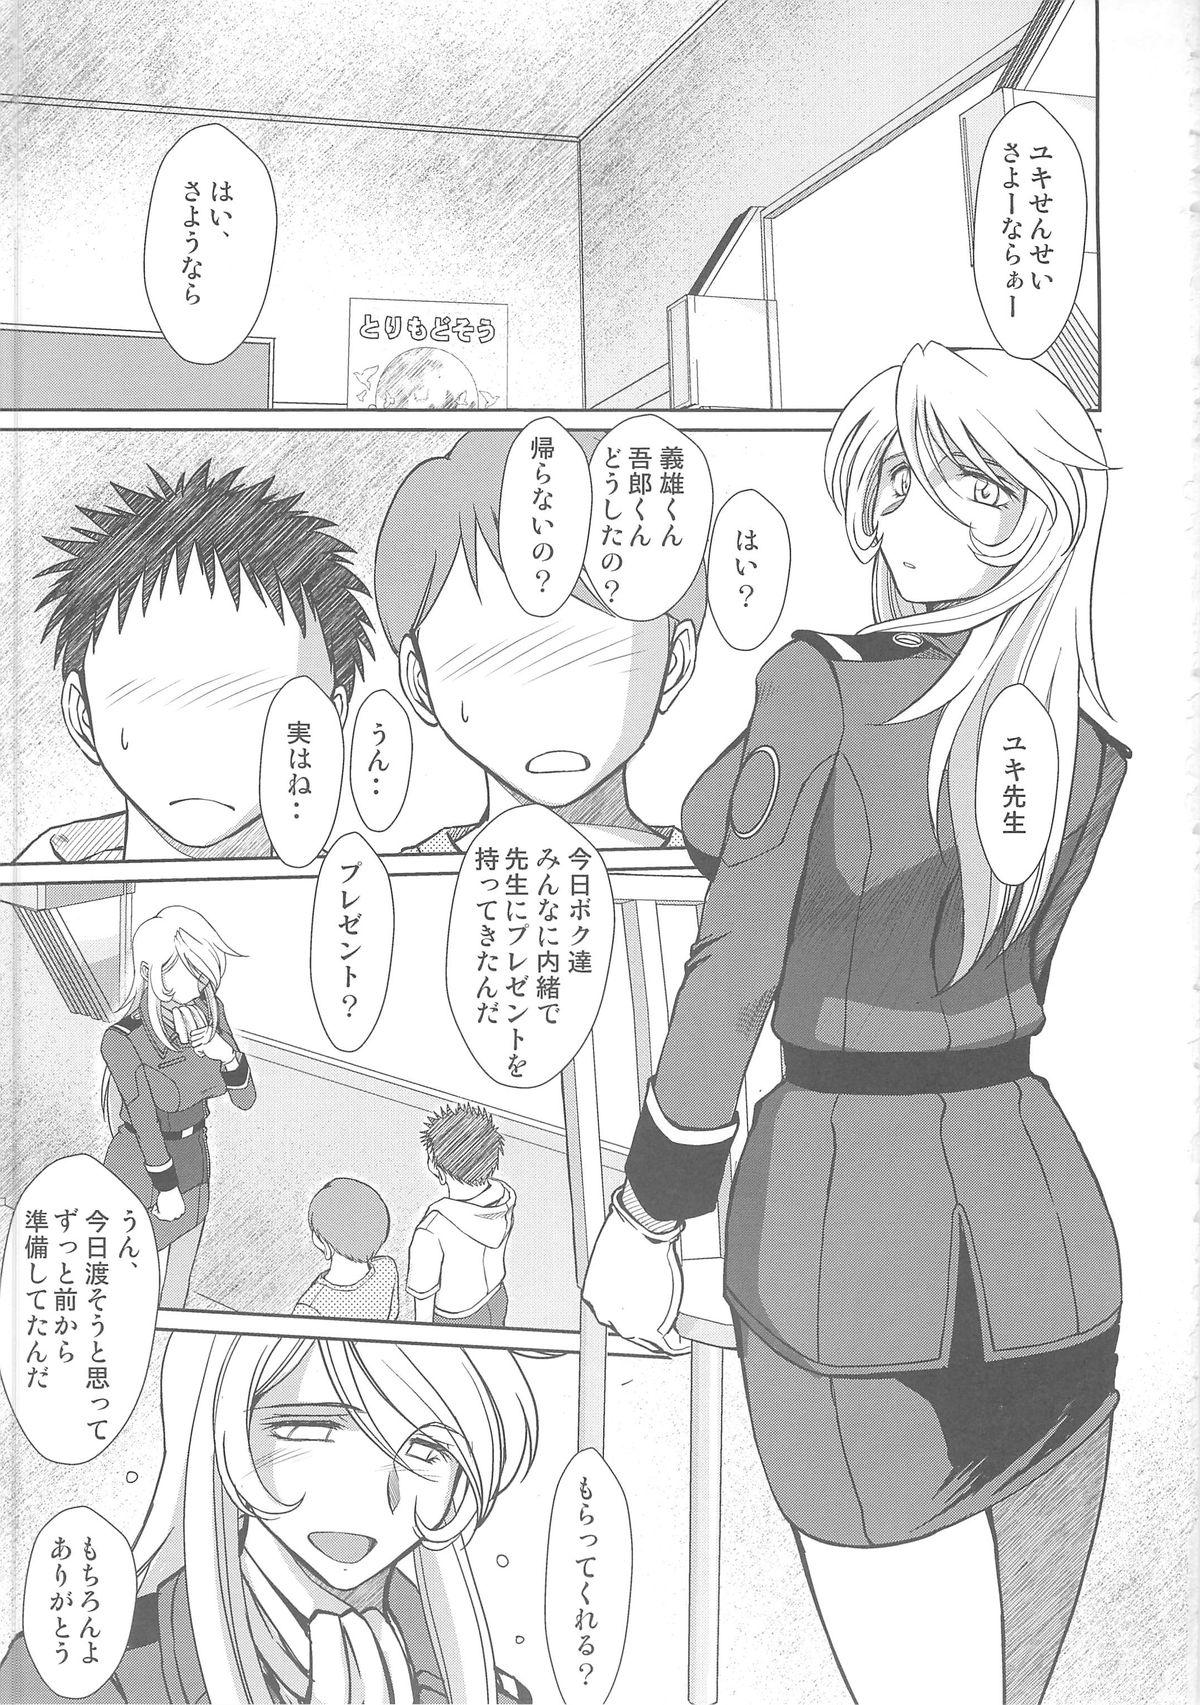 Plump 2199-nen no Mori Yuki - Space battleship yamato Bottom - Page 2